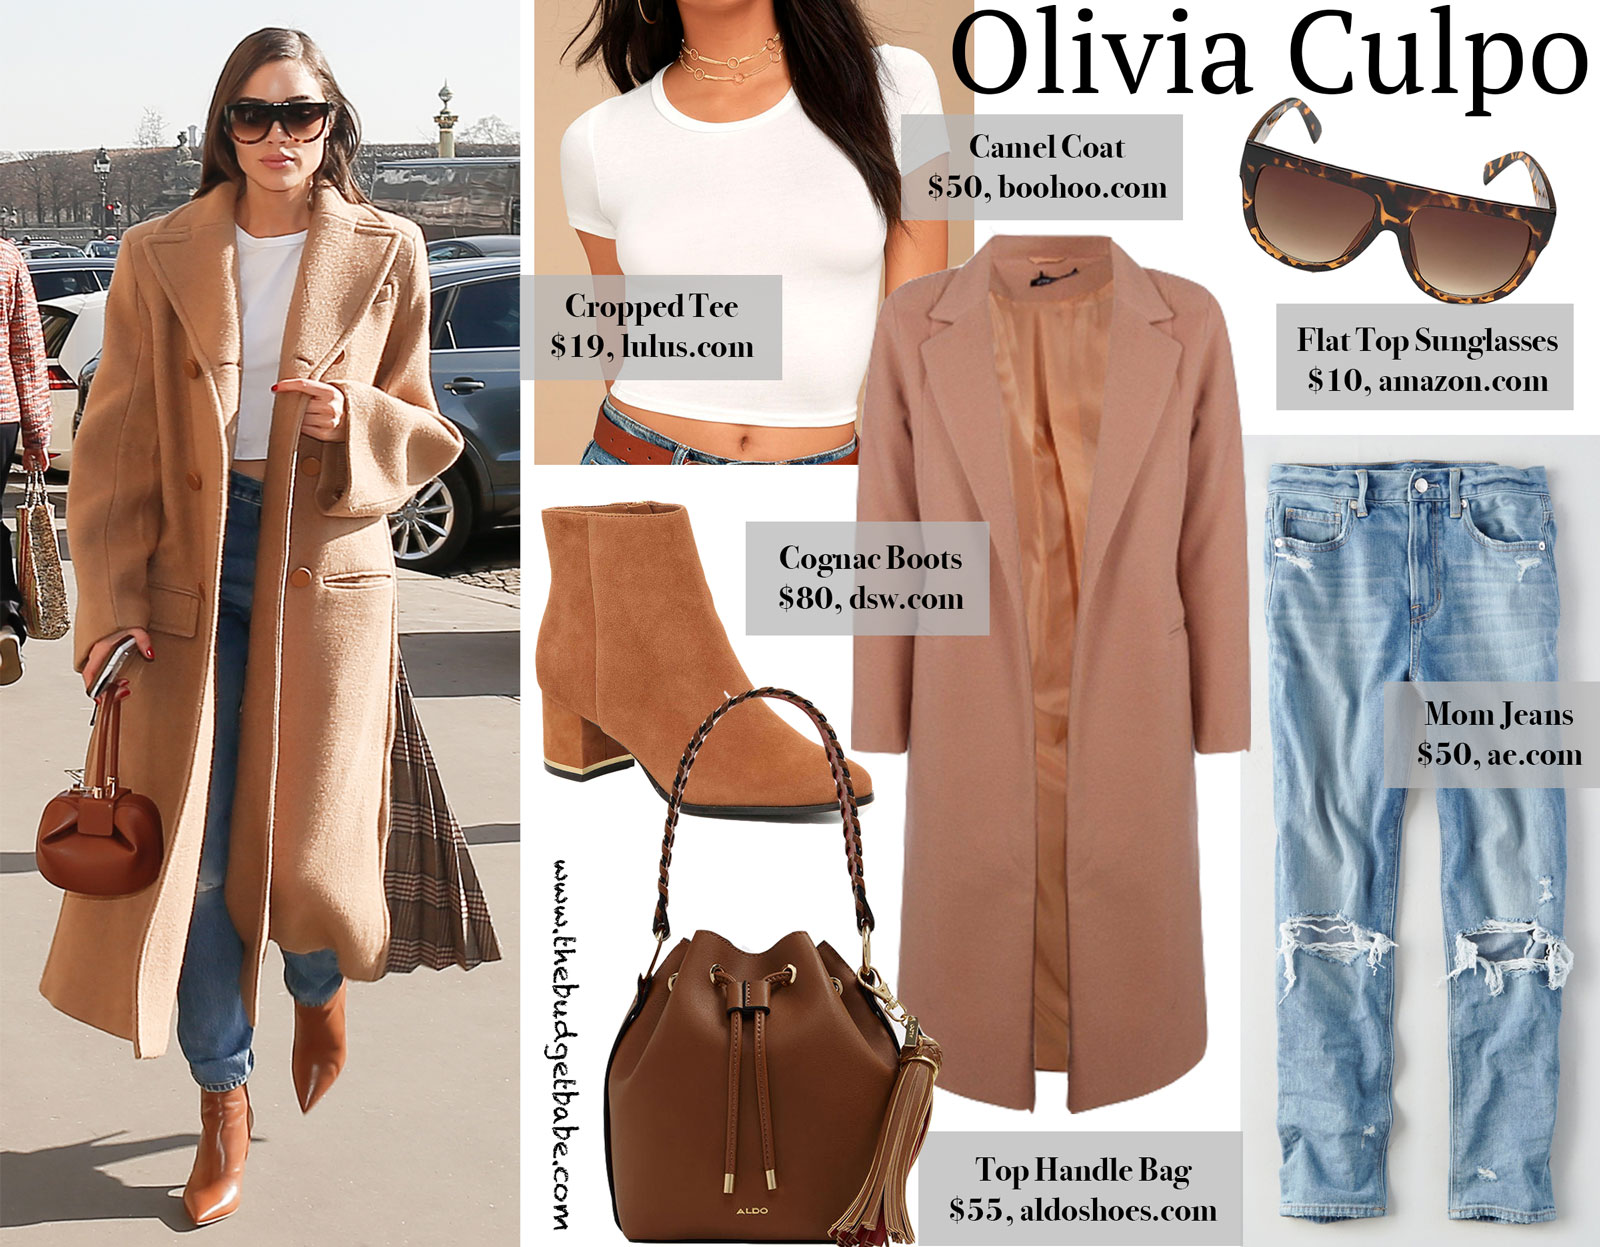 Olivia Culpo Camel Coat Look for Less